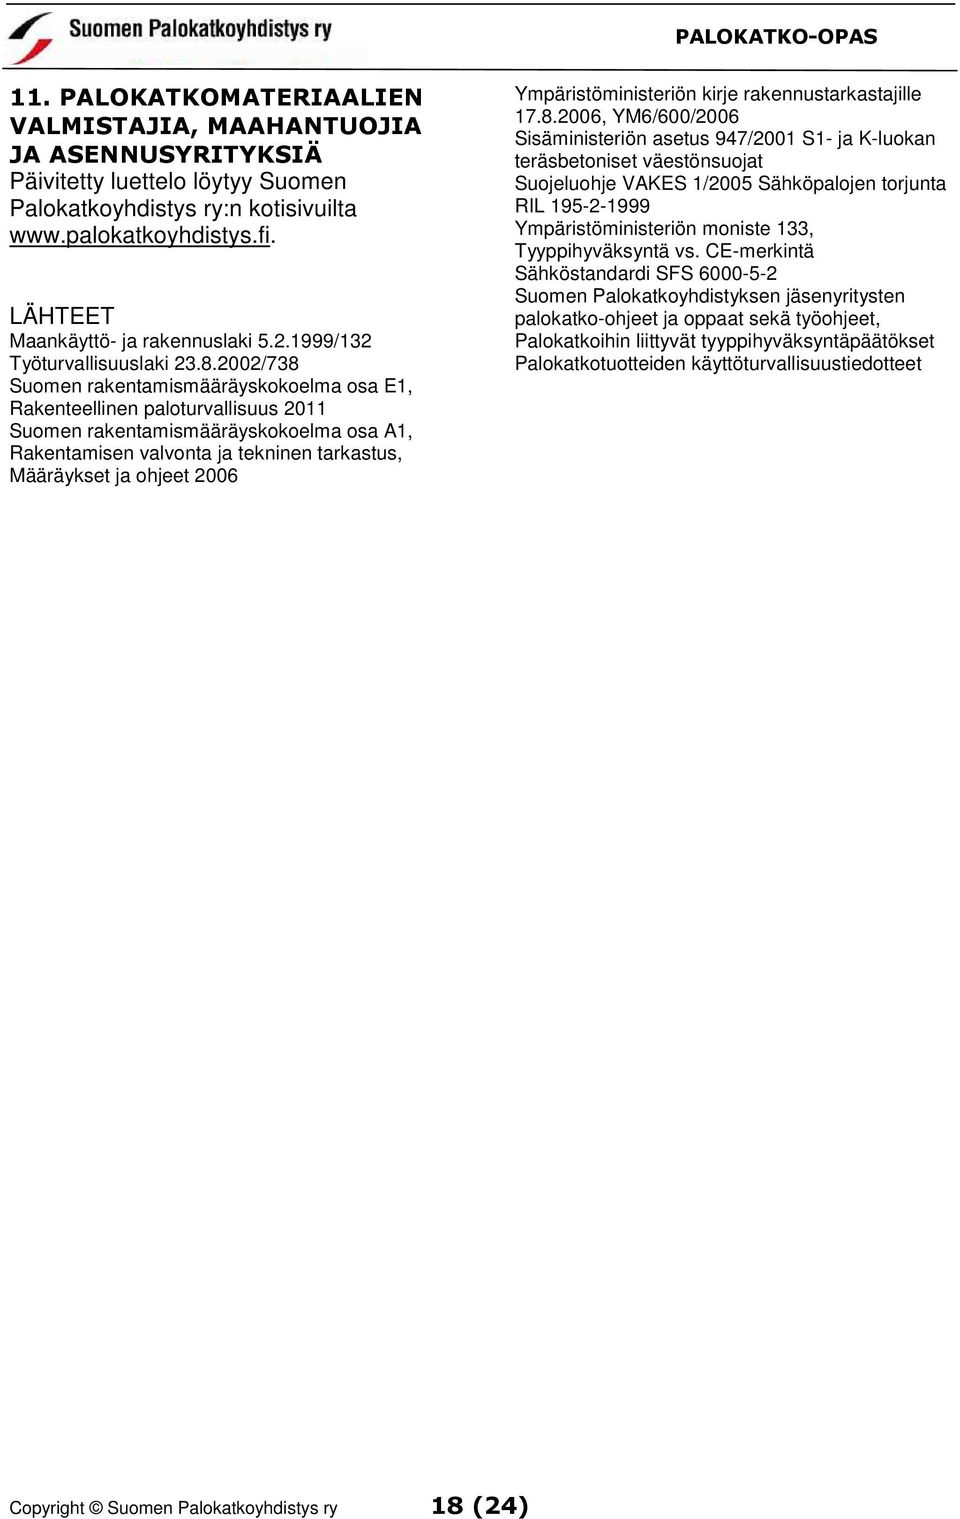 2002/738 Suomen rakentamismääräyskokoelma osa E1, Rakenteellinen paloturvallisuus 2011 Suomen rakentamismääräyskokoelma osa A1, Rakentamisen valvonta ja tekninen tarkastus, Määräykset ja ohjeet 2006